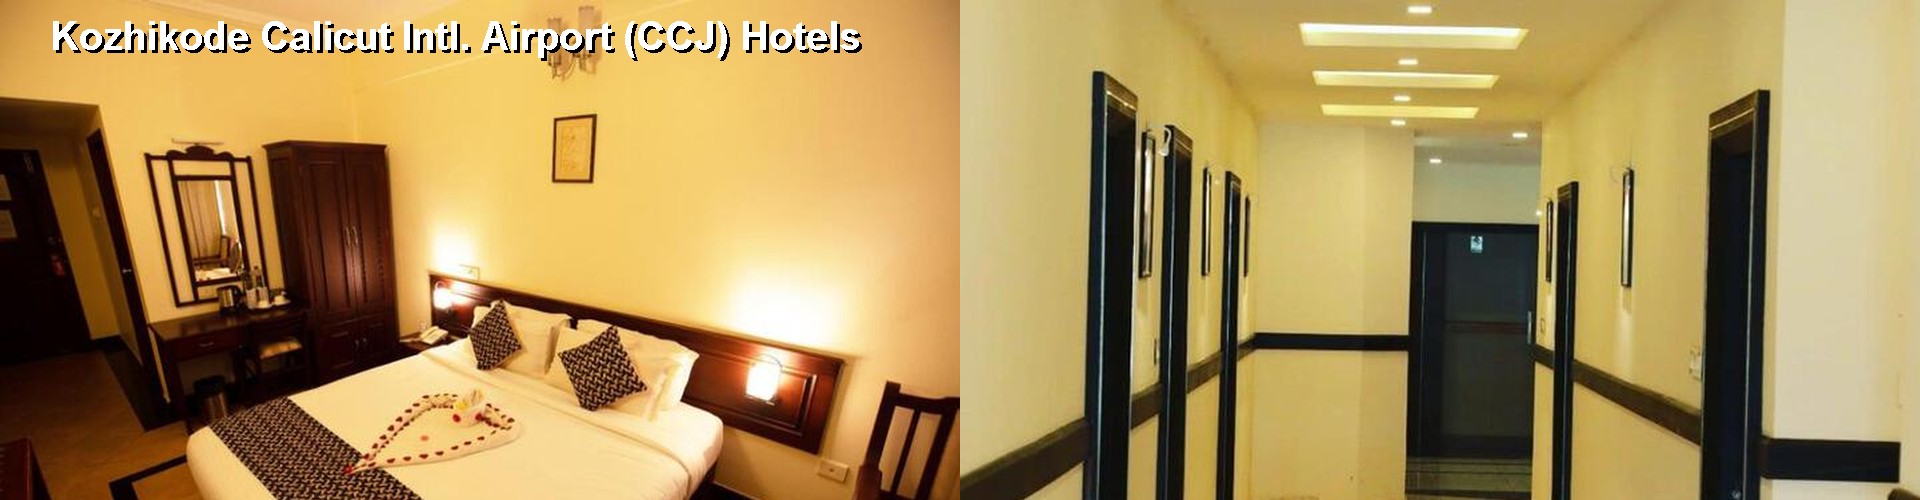 2 Best Hotels near Kozhikode Calicut Intl. Airport (CCJ)